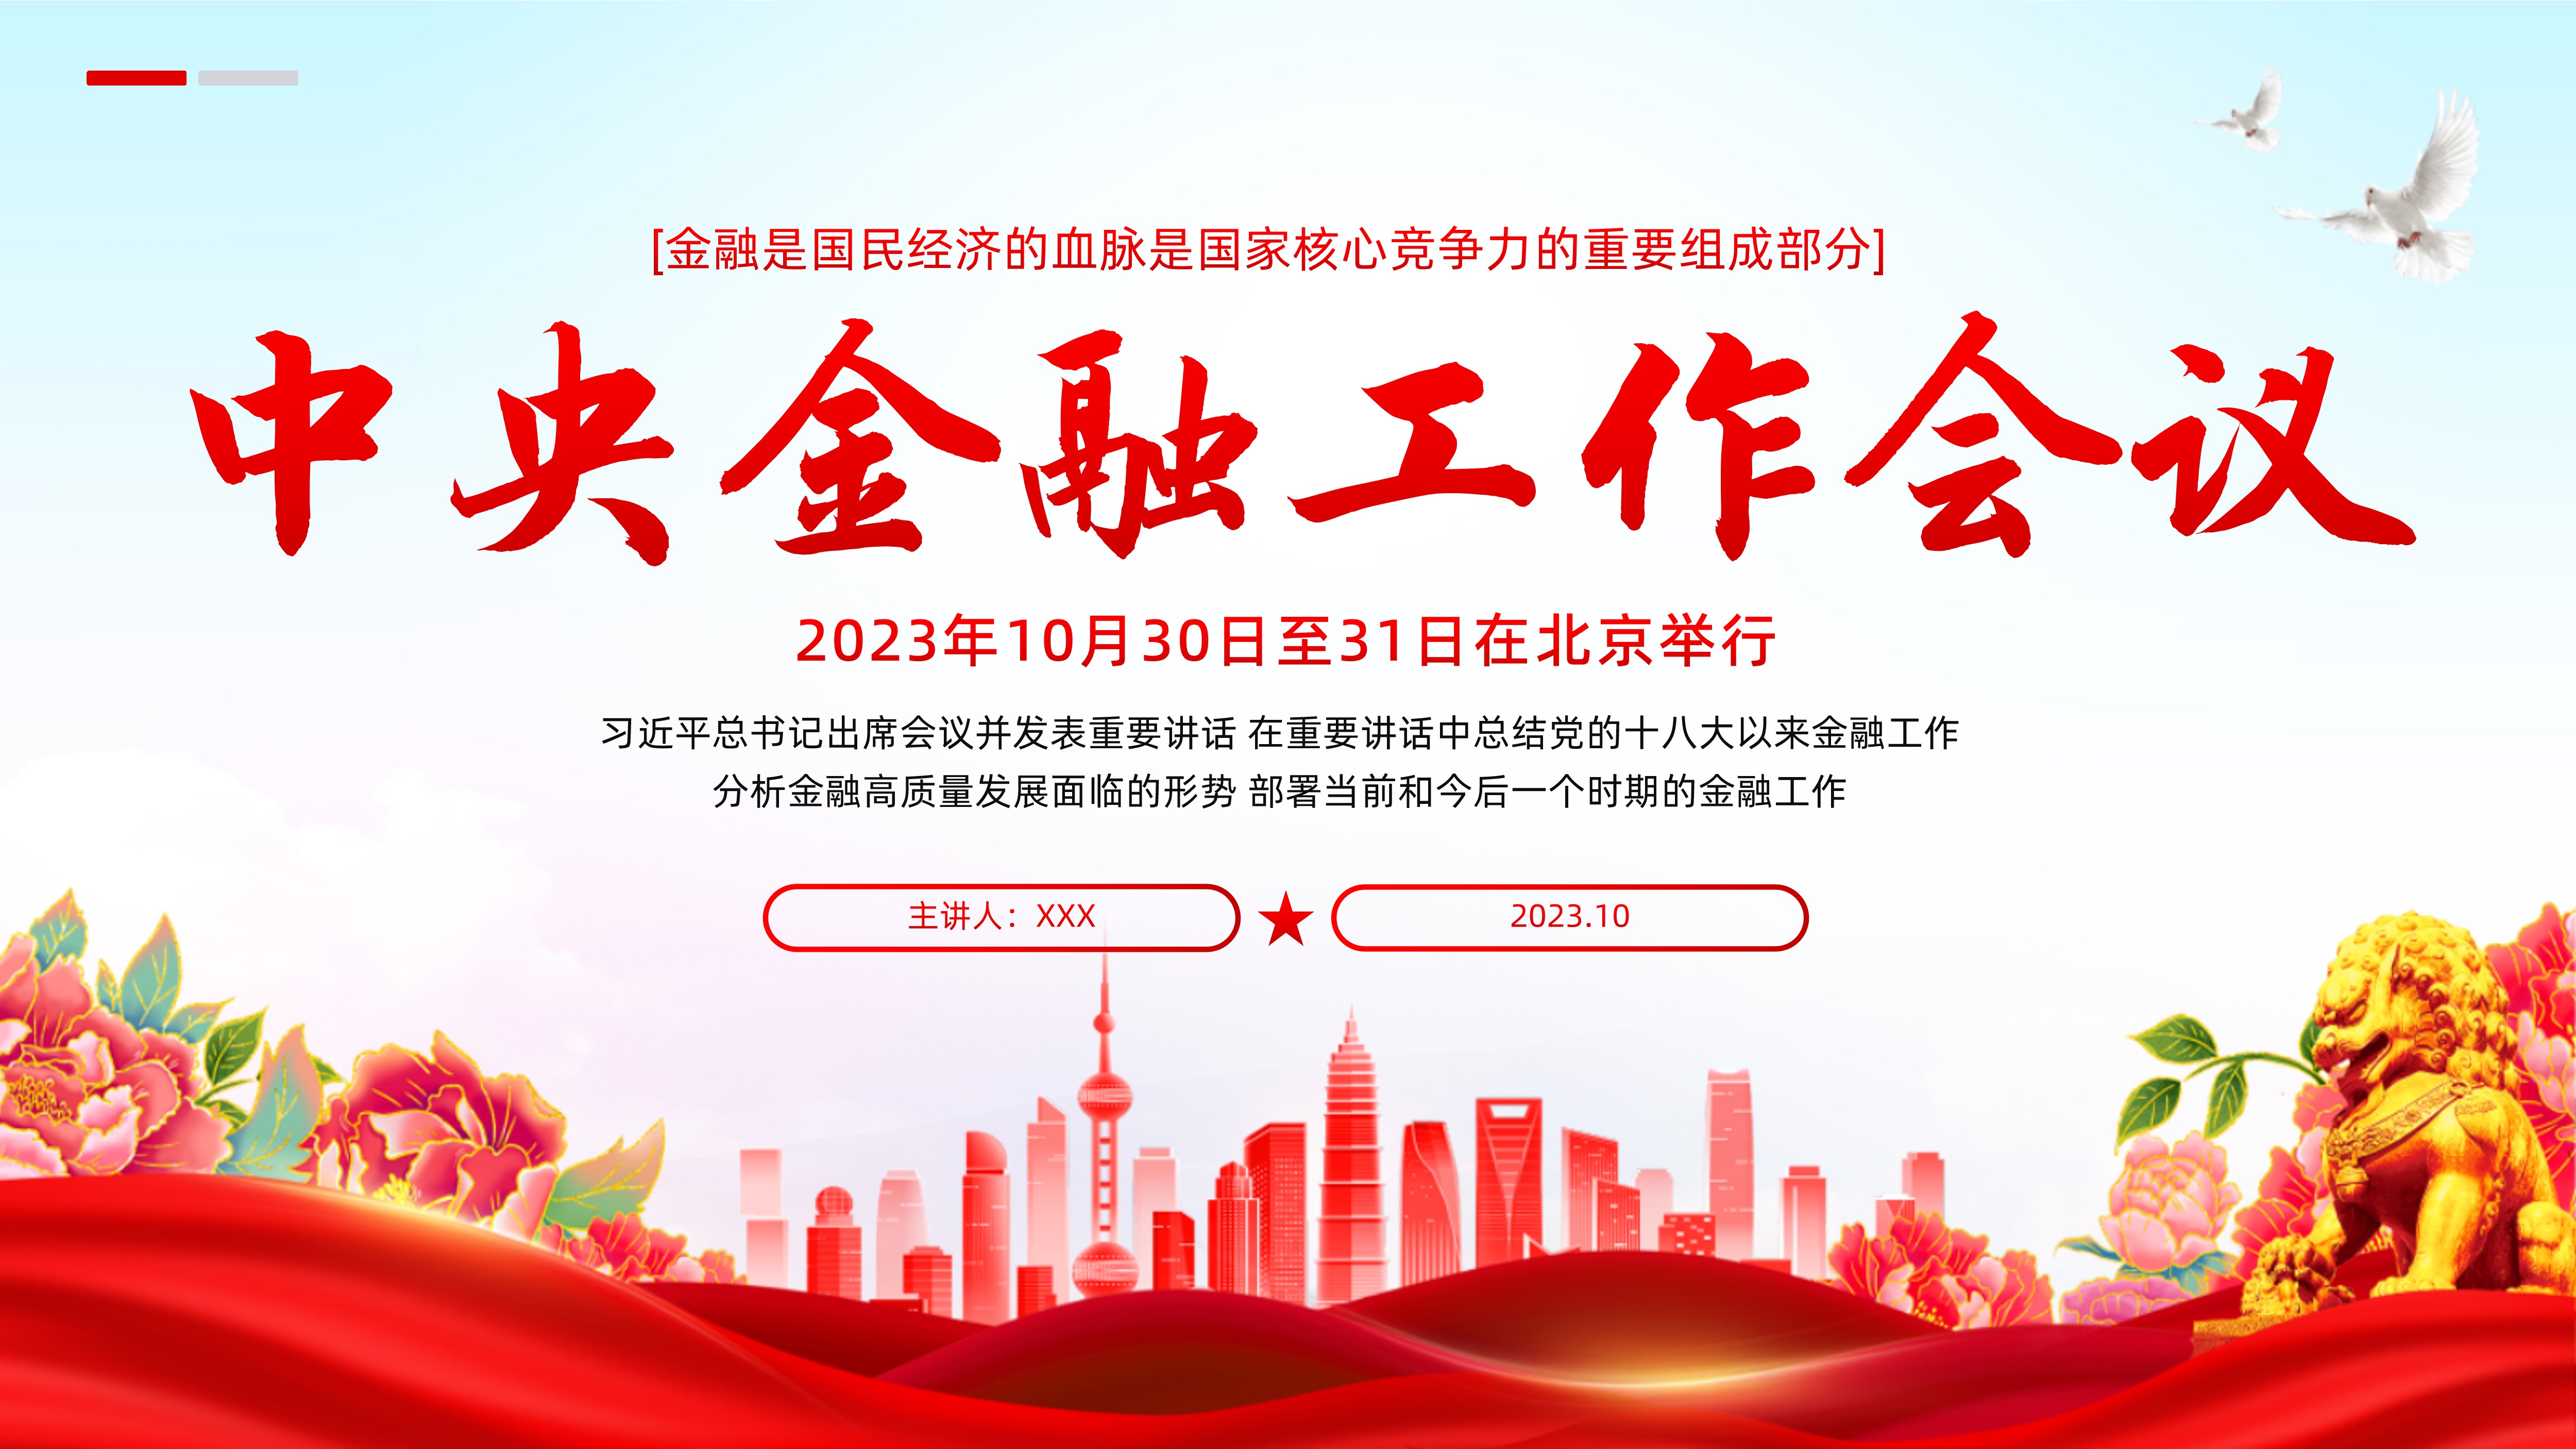 中央金融工作会议PPT课件2023年10月30日至31日在北京举行中国全国金融工作会议PPT课件坚定不移走中国特色金融发展之路PPT课件